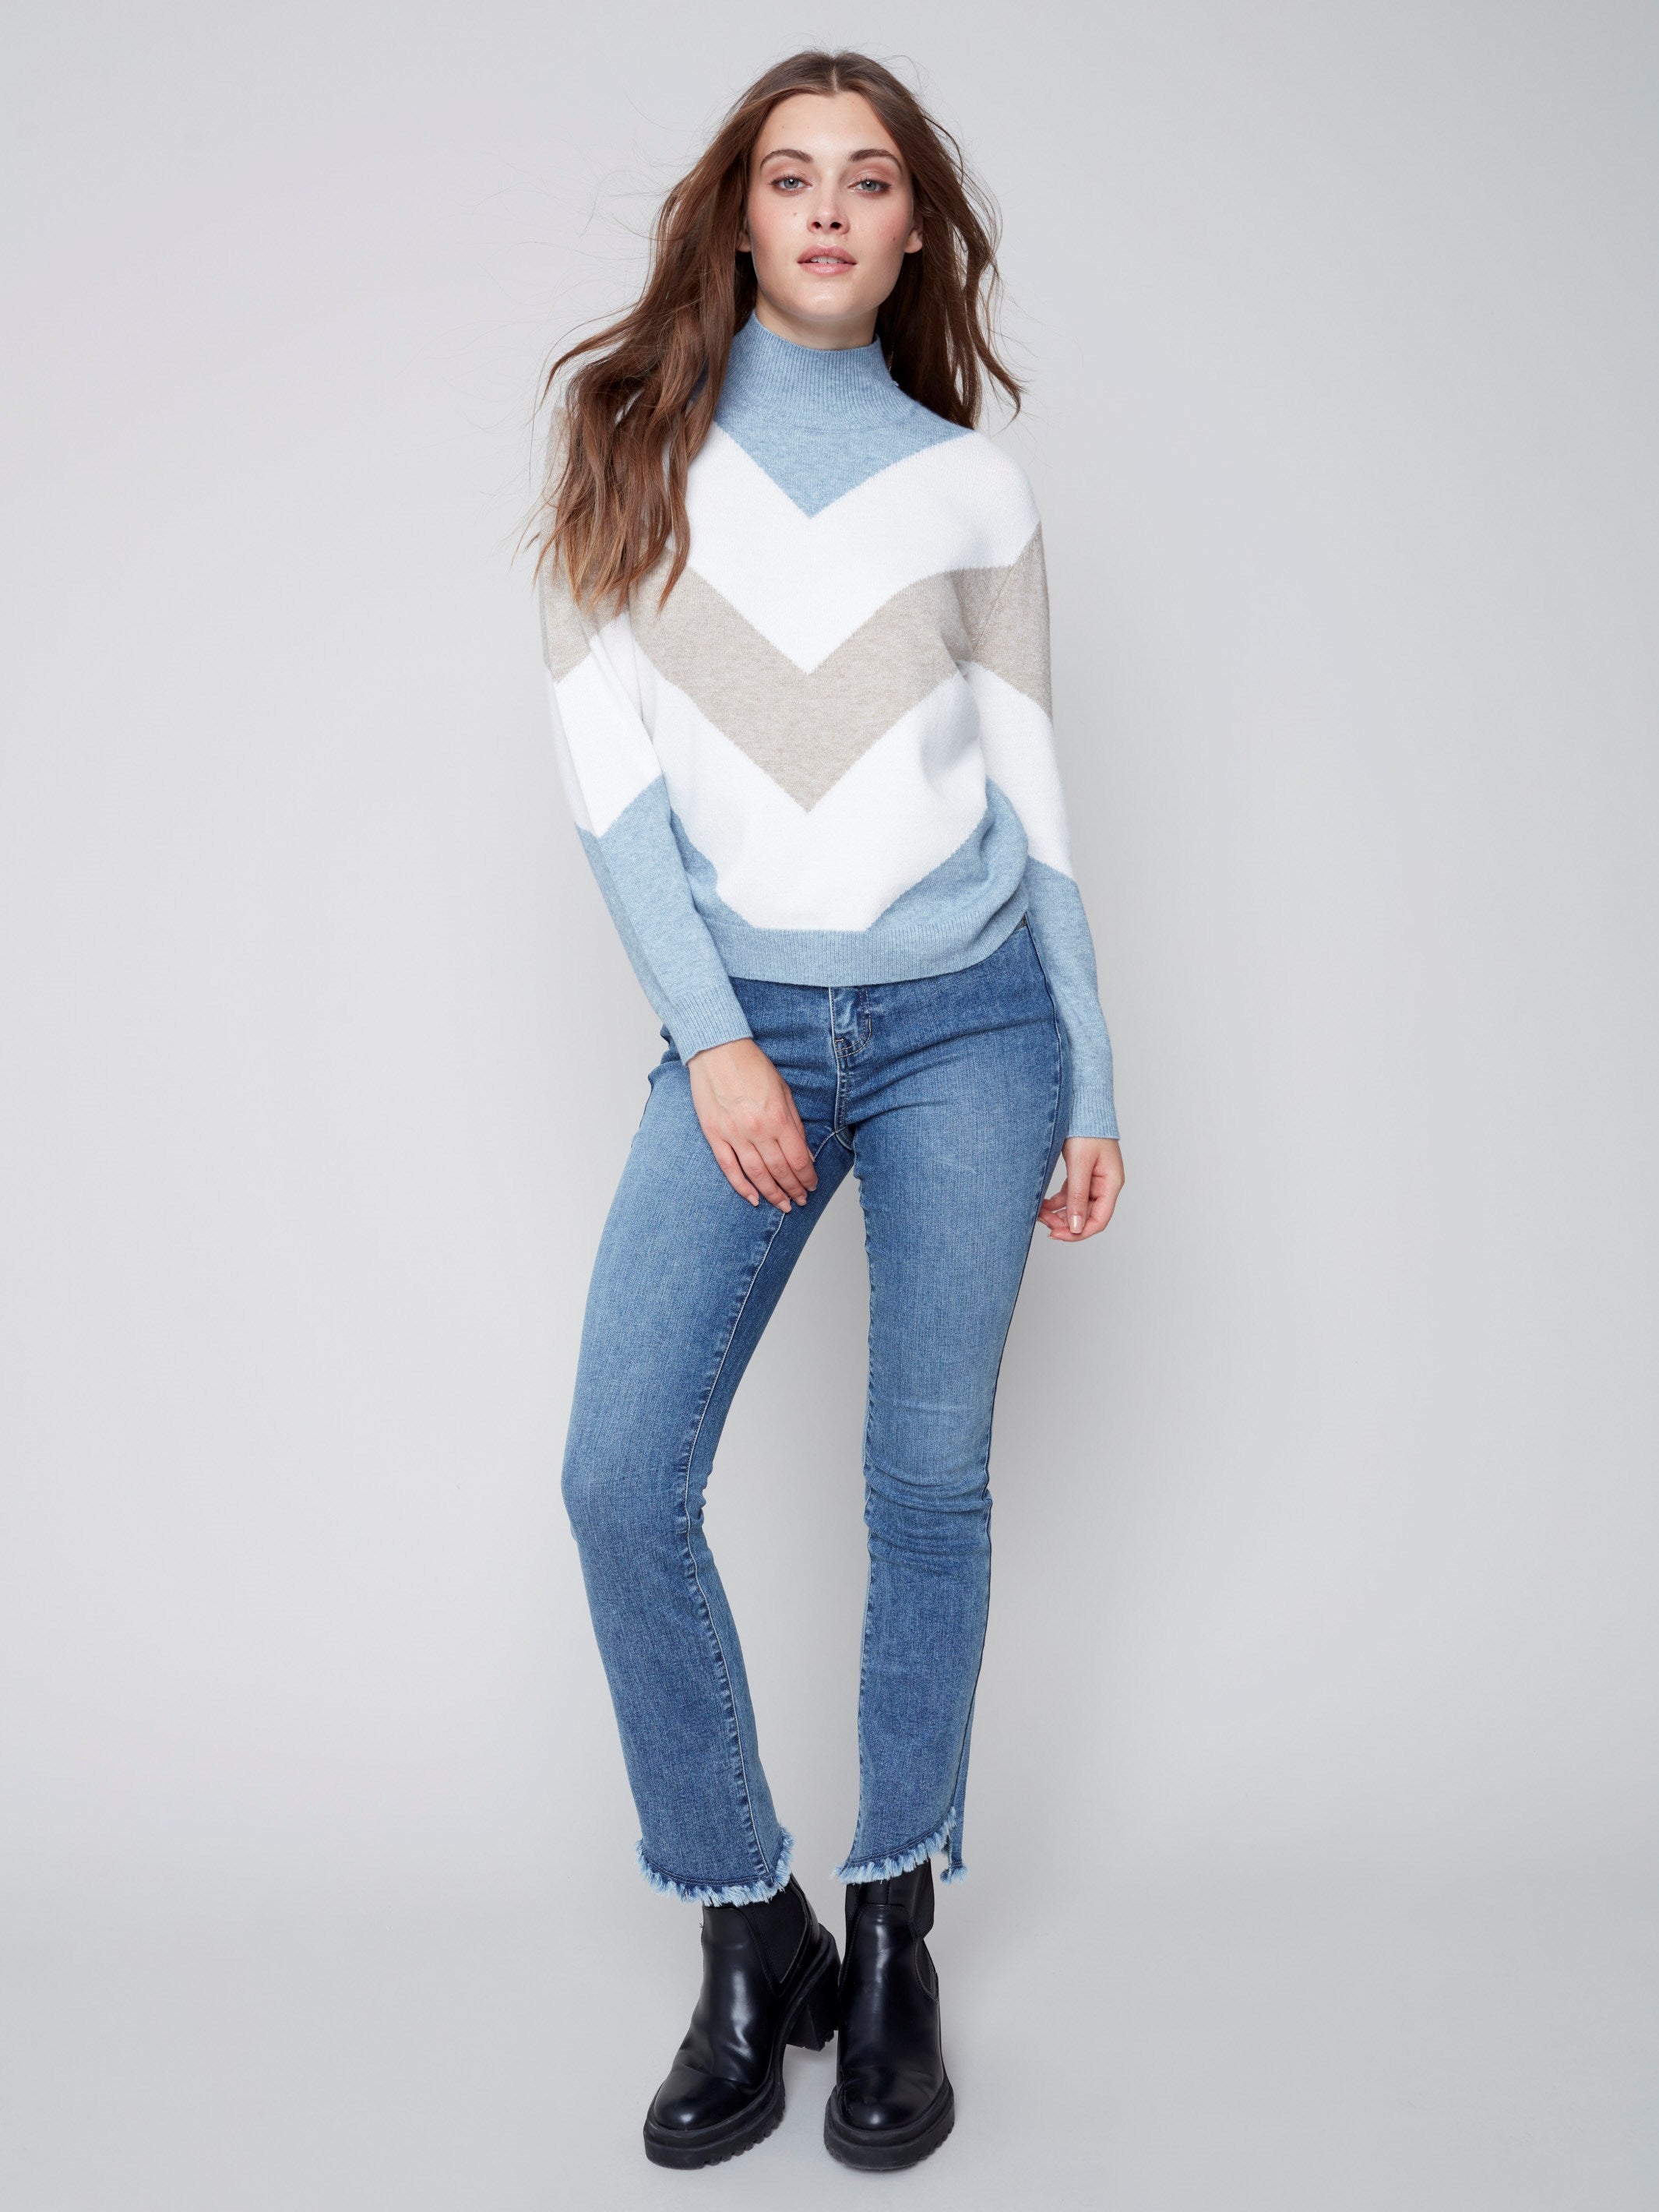 Sweater with Chevron Stripes - Snowflake